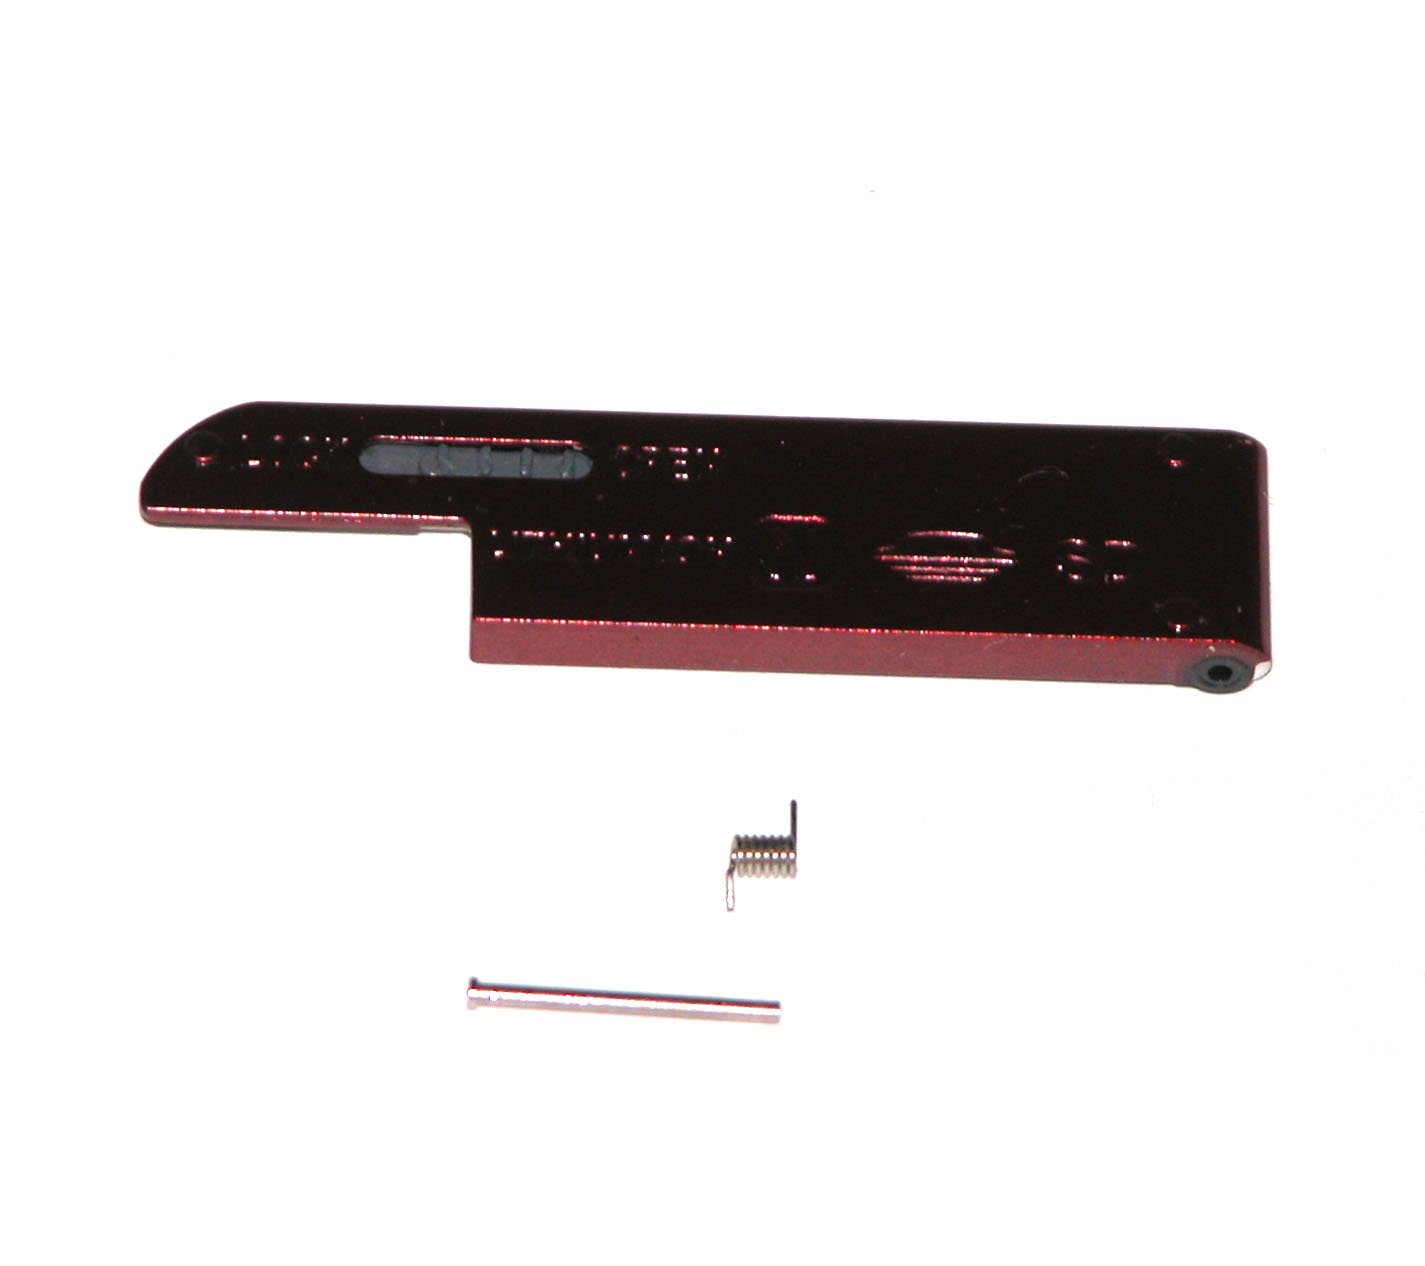 Sony Cyber-shot DSC-W510 Battery Door / Cover (Dark Red) - Repair Parts